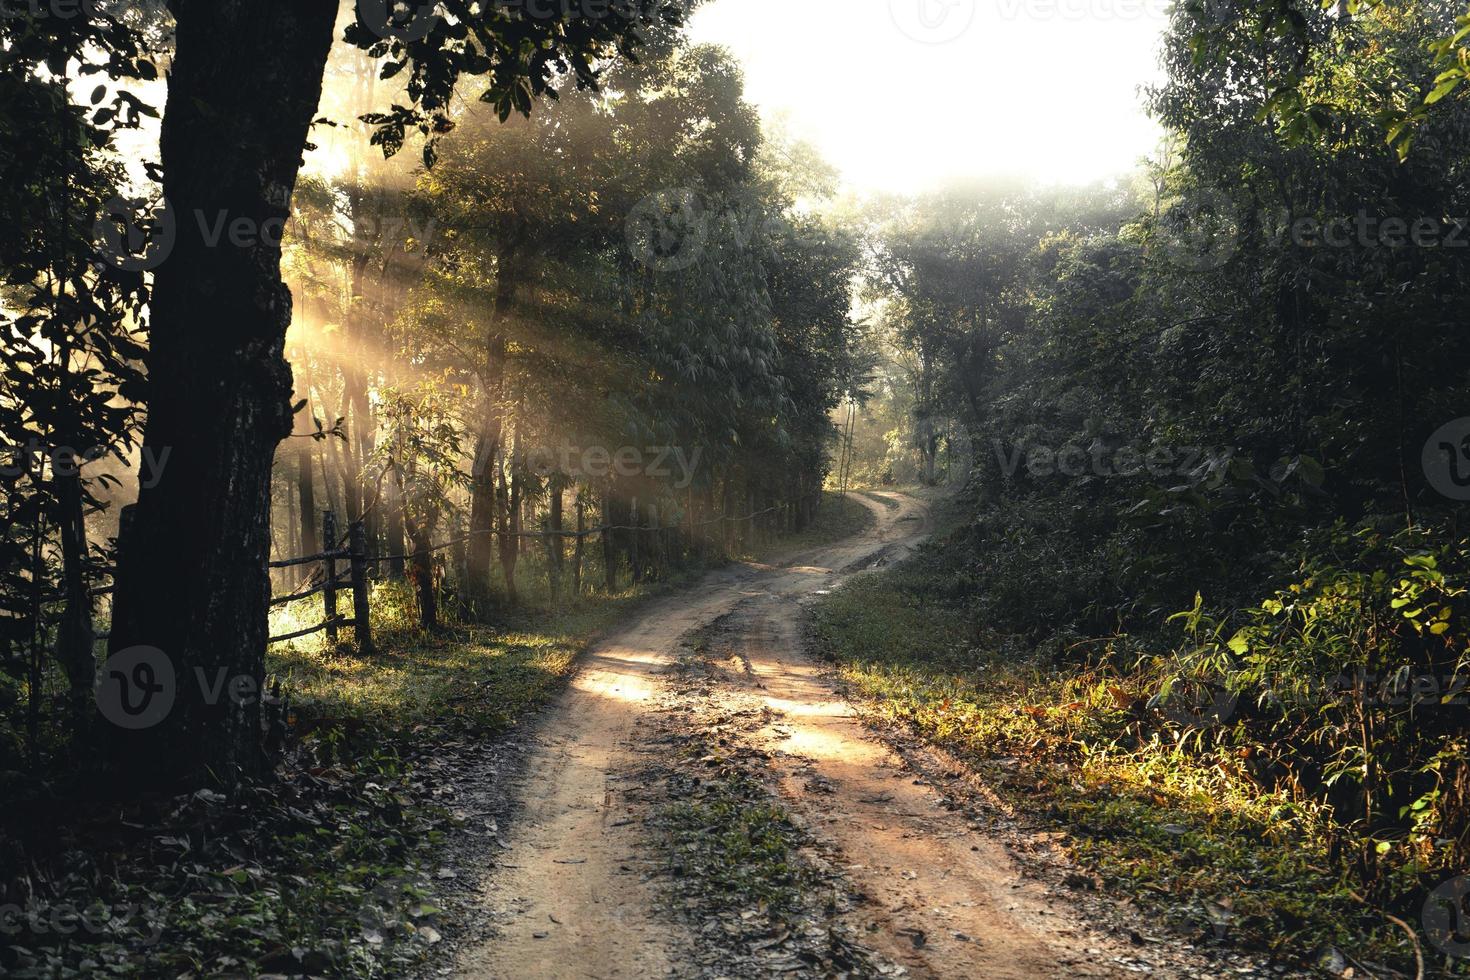 estrada com neblina em uma vila rural pela manhã, estrada florestal foto